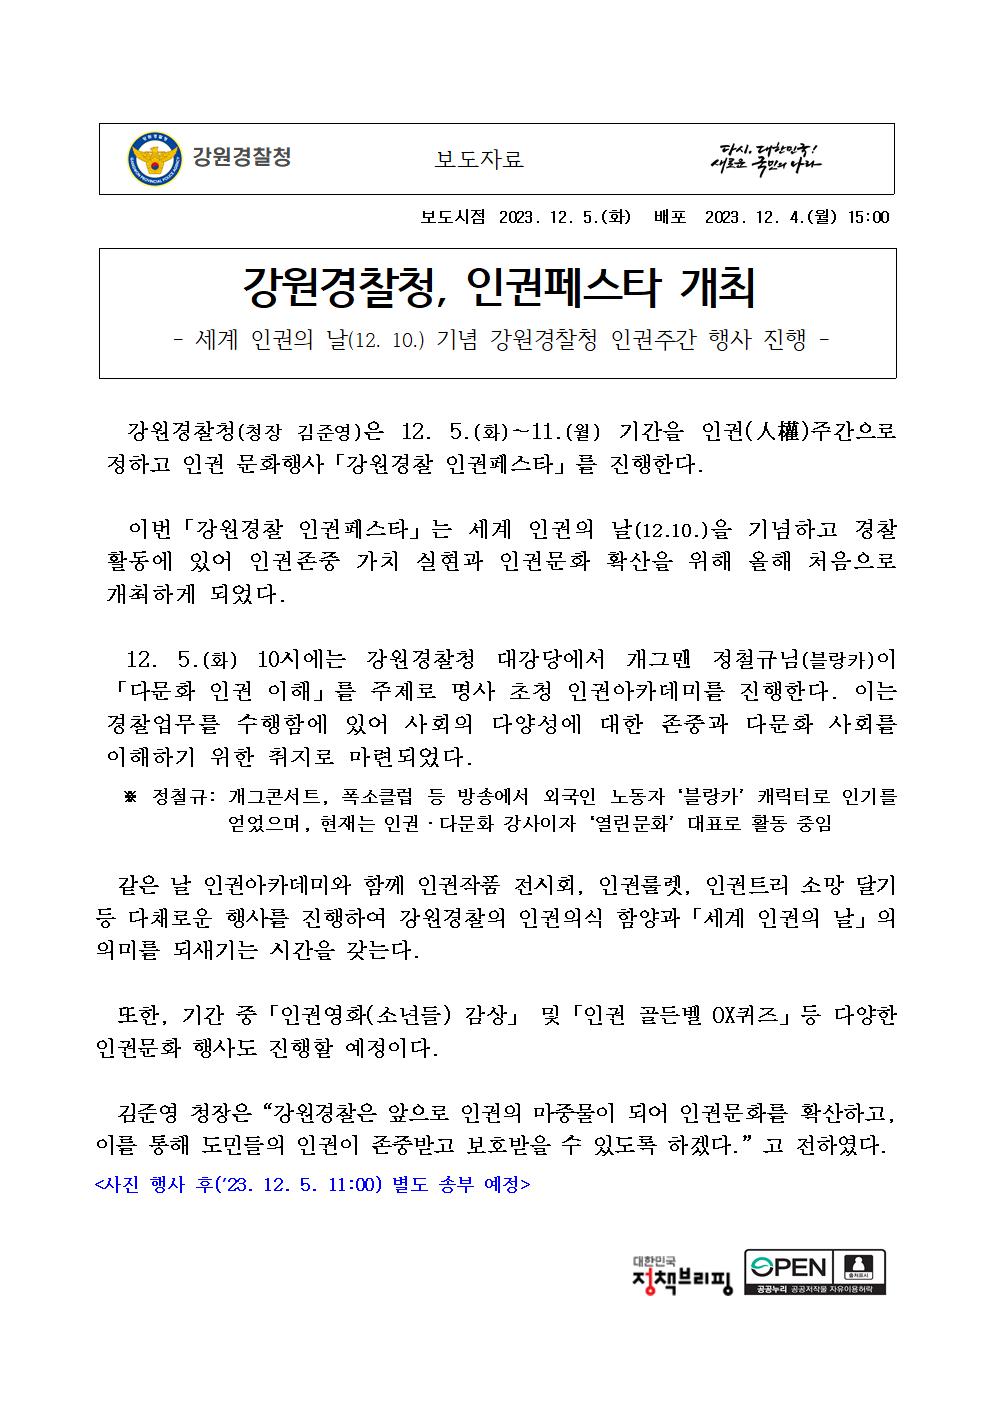 강원경찰청, 인권페스타 개최 -강원경찰청, 인권페스타 개최1